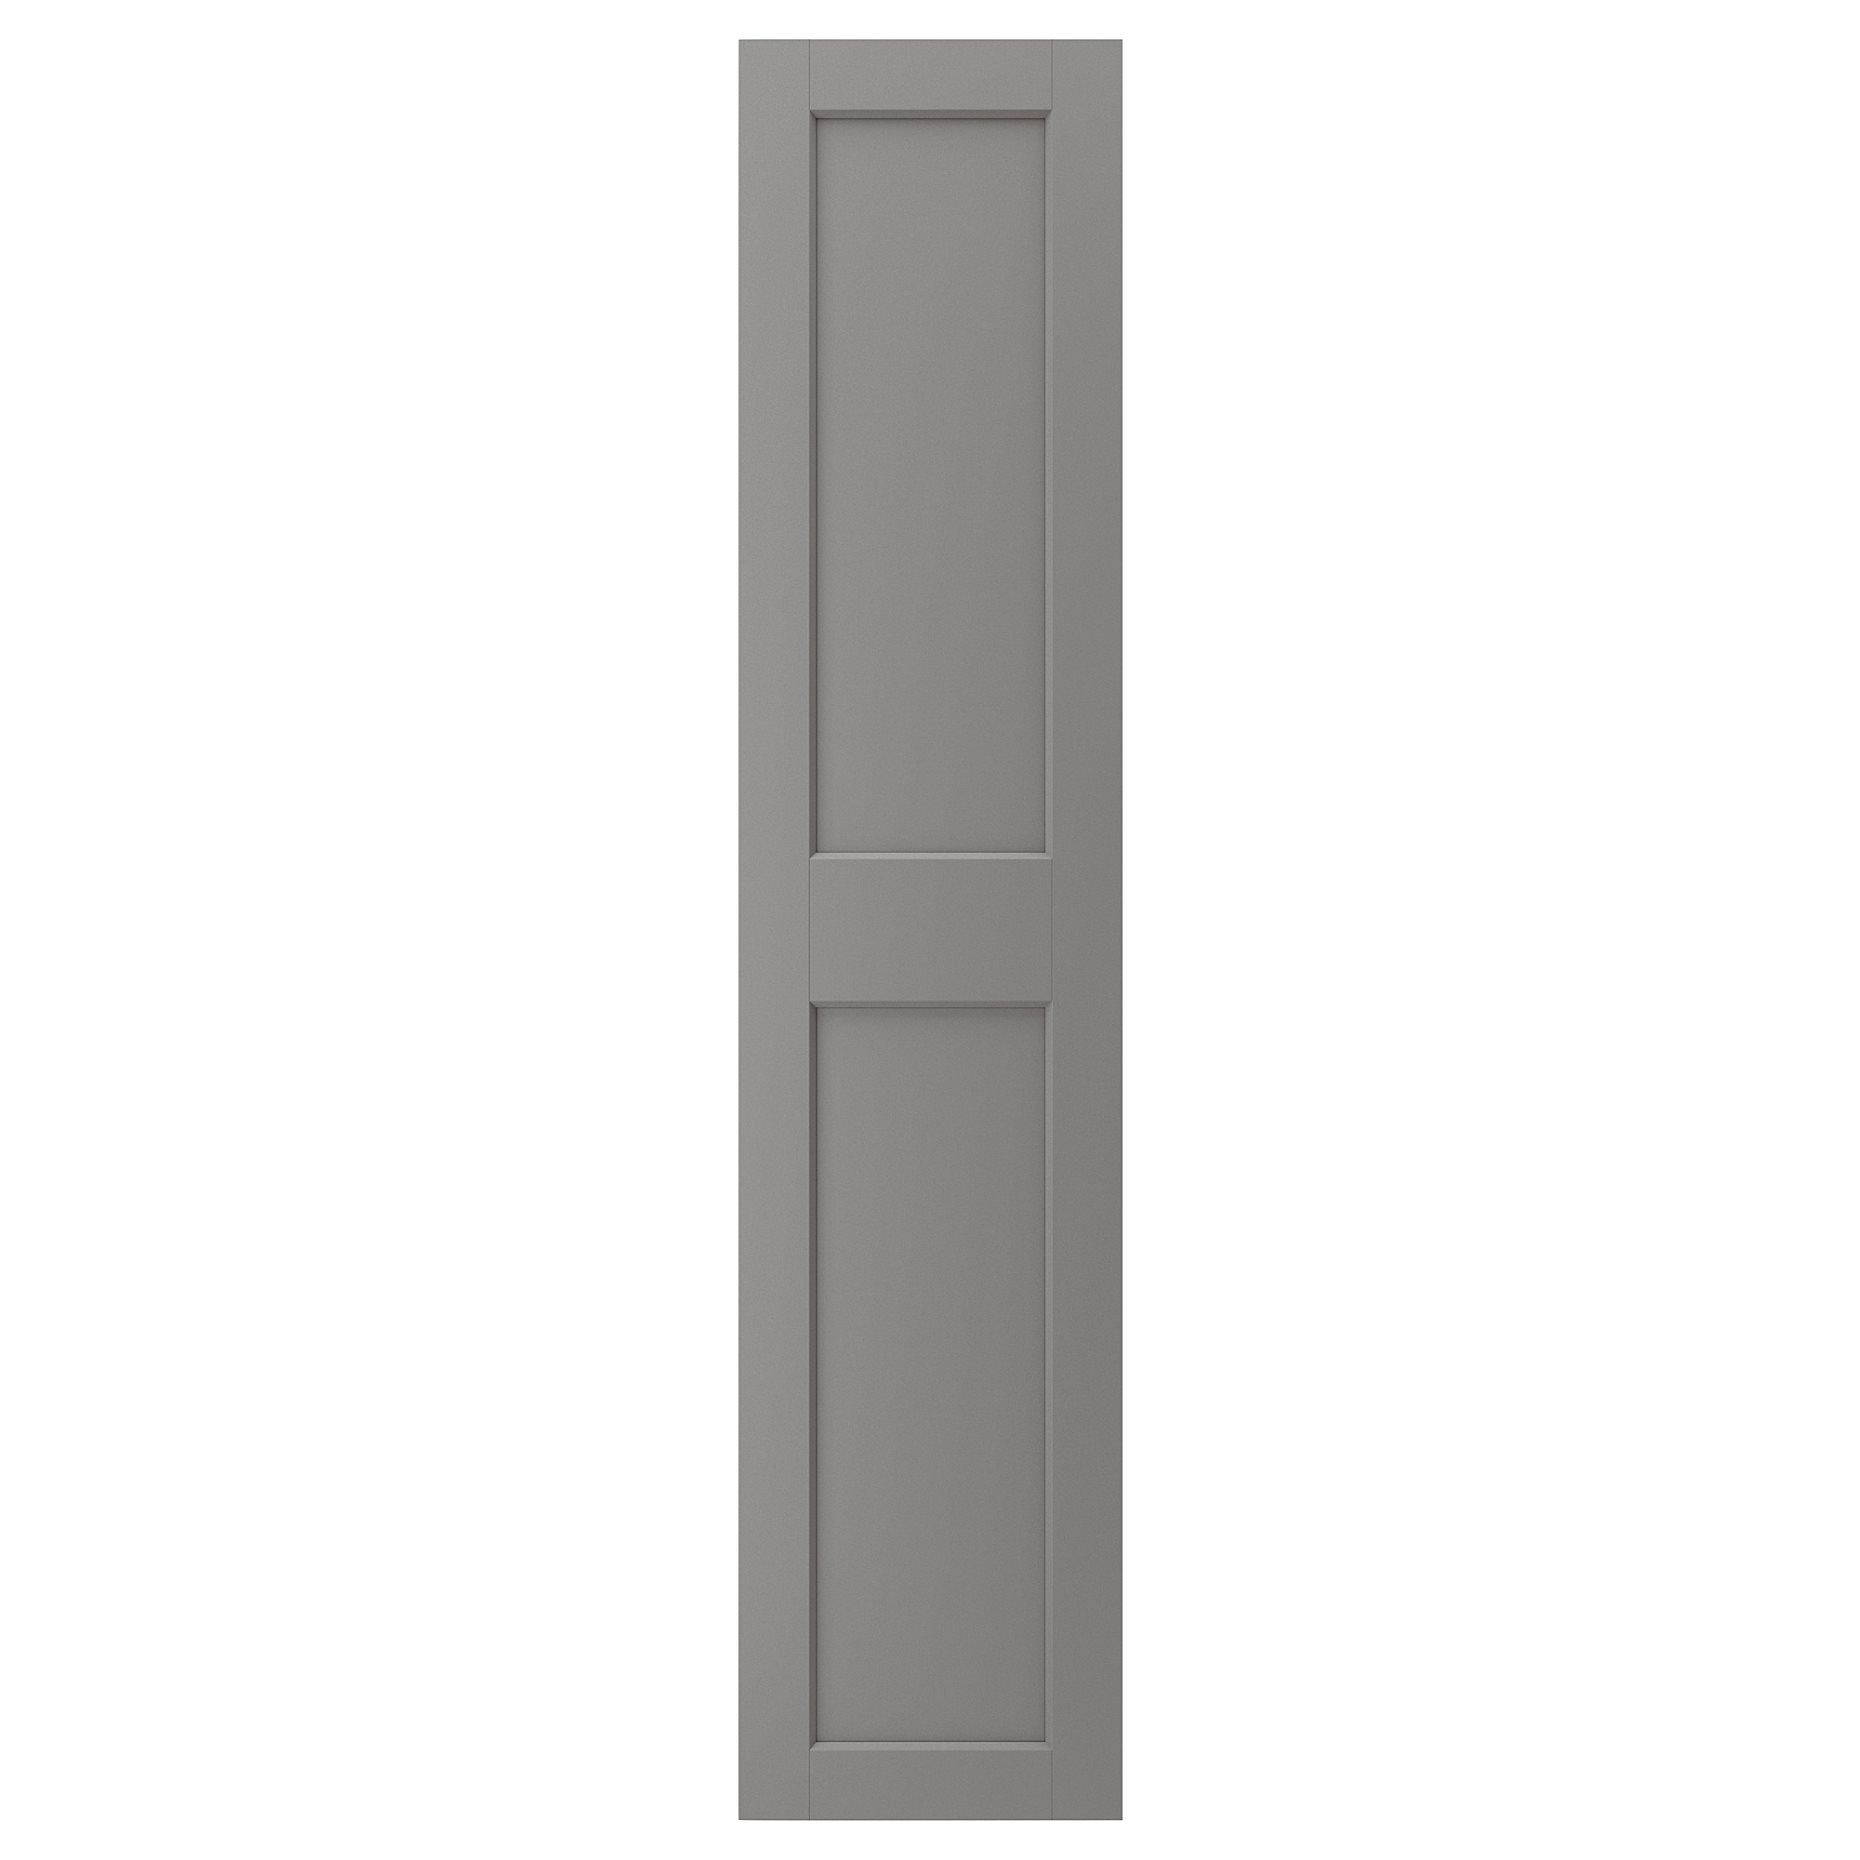 GRIMO, door, 50x229 cm, 804.351.88